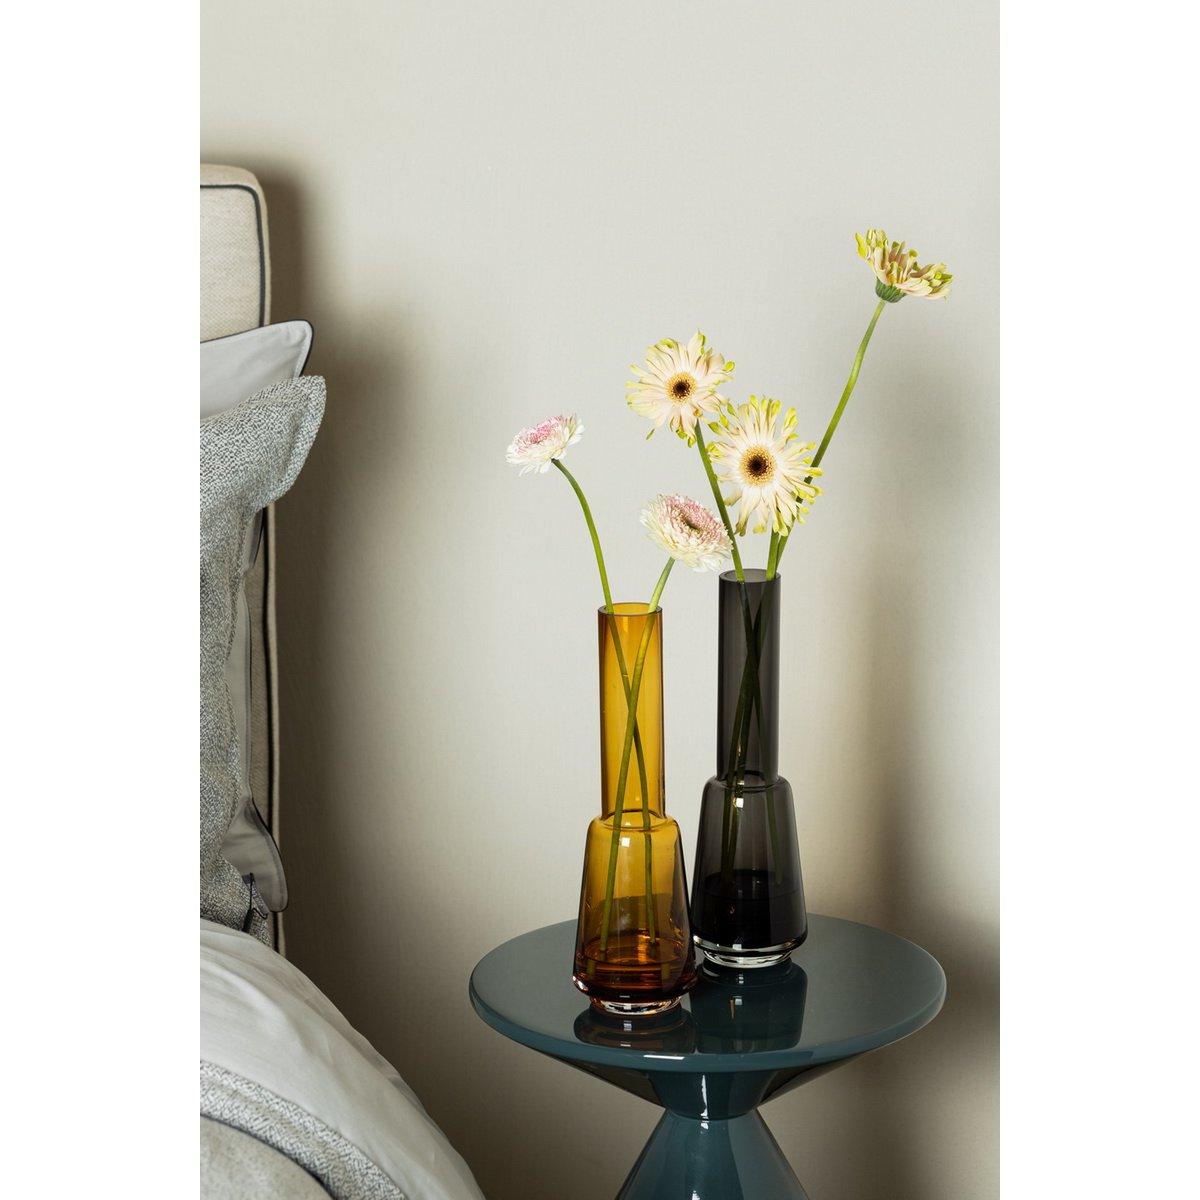 XXL Vase im modernen Retro-Design Blumenvase - HomeDesign Knaus